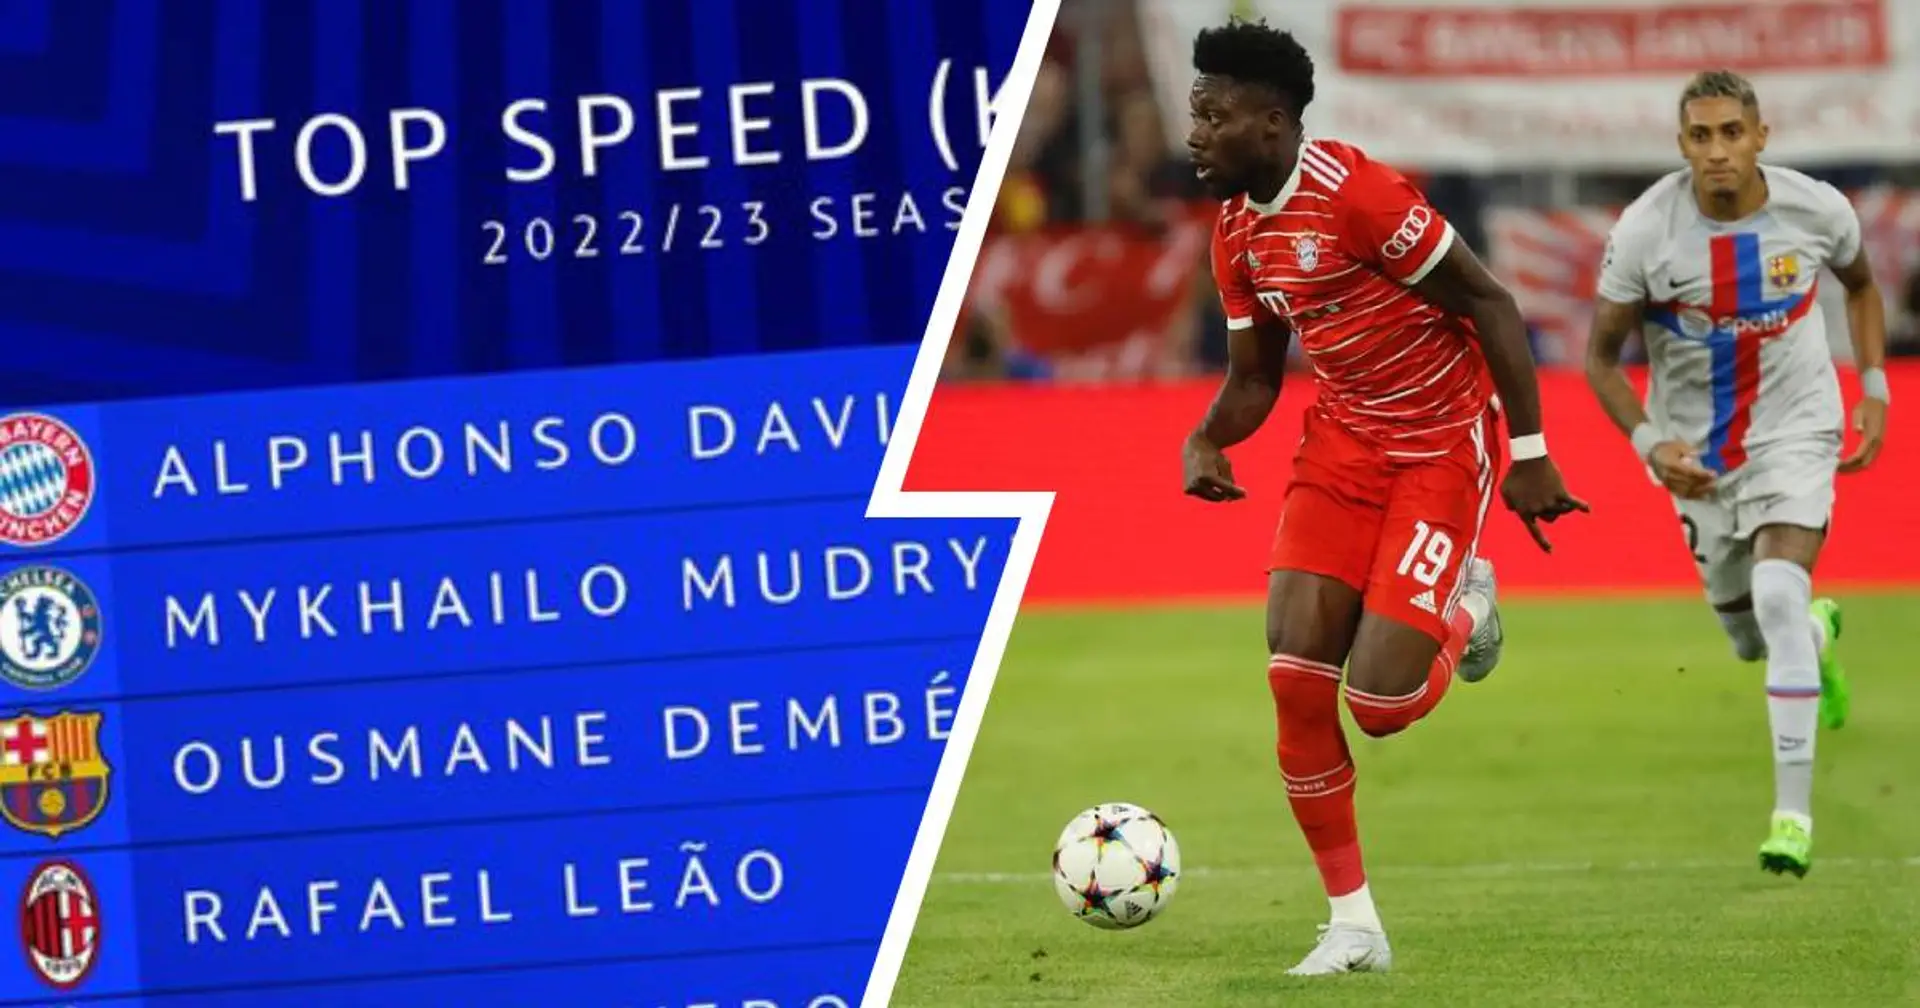 Über 37 km/h! Alphonso Davies ist schnellster Spieler der Champions-League-Saison 2022/23